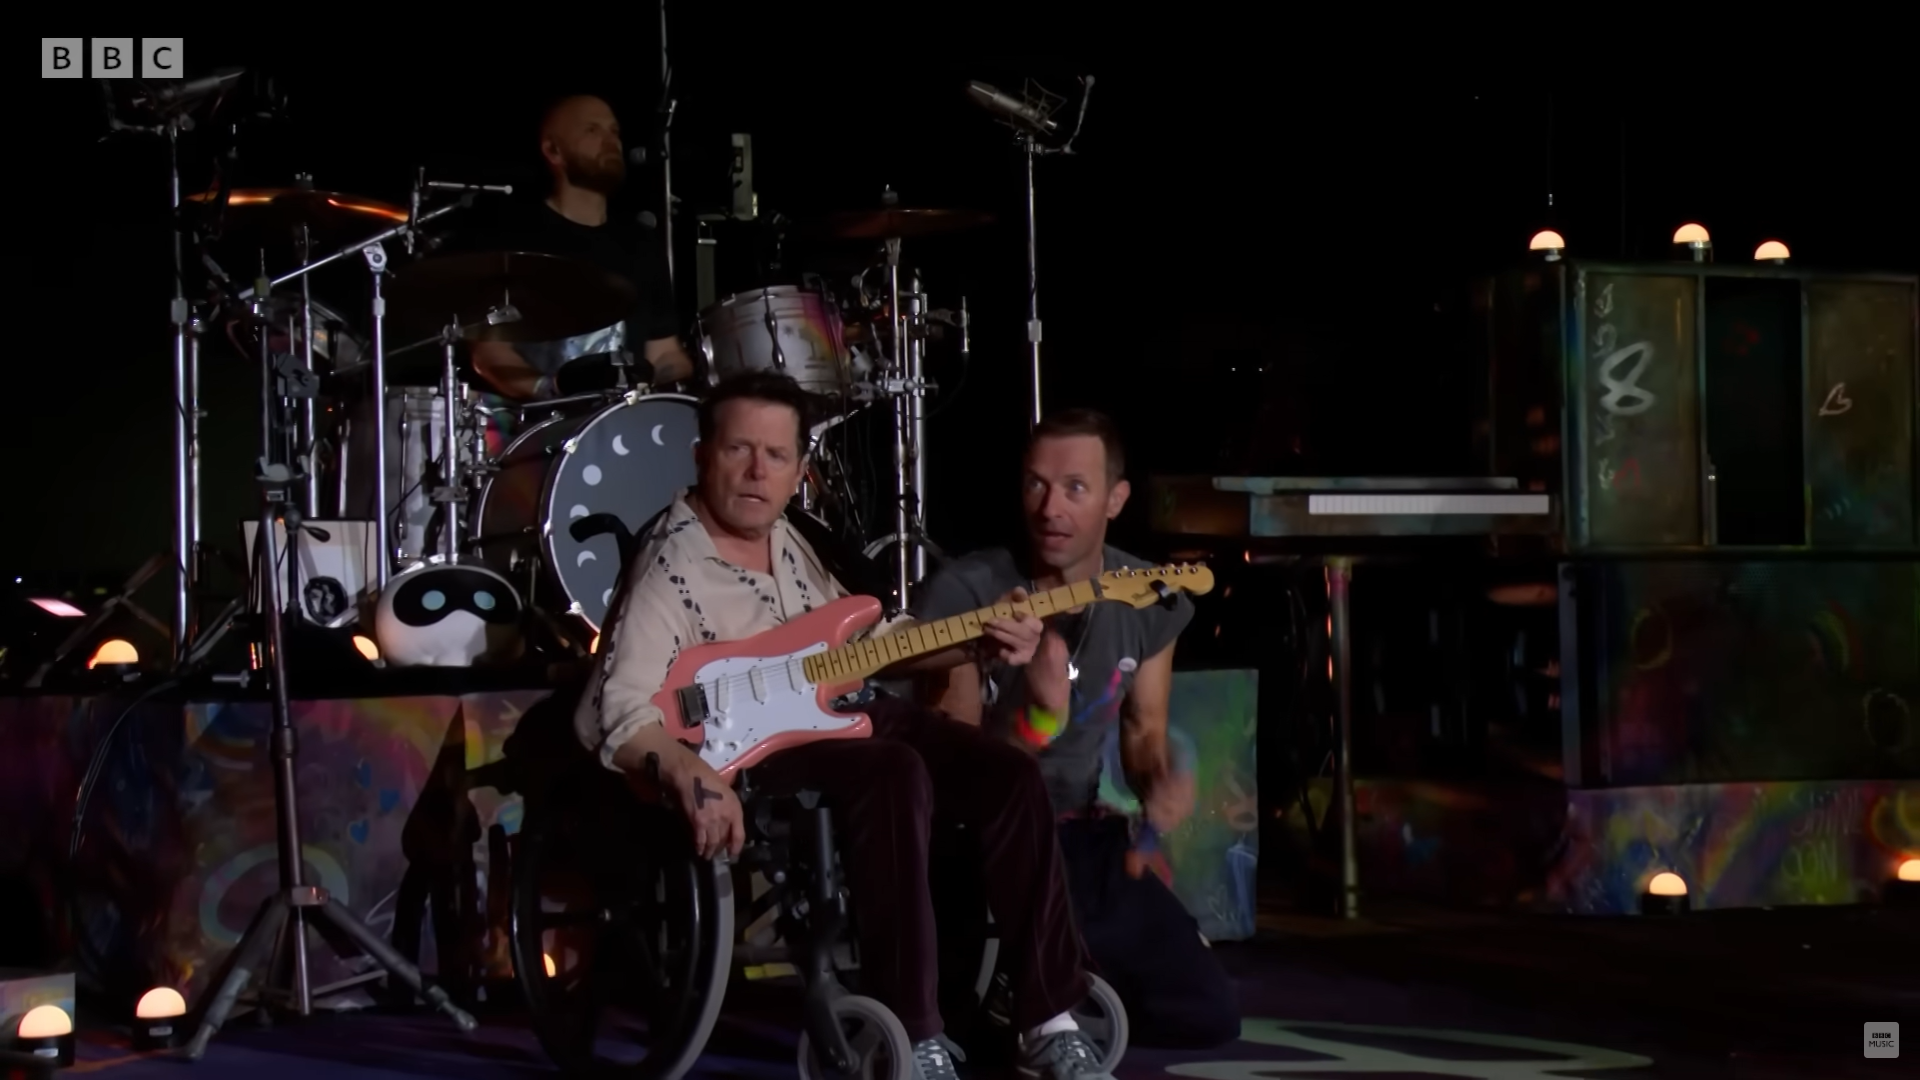 Ator de "De Volta para o Futuro" surpreende público em show do Coldplay no festival